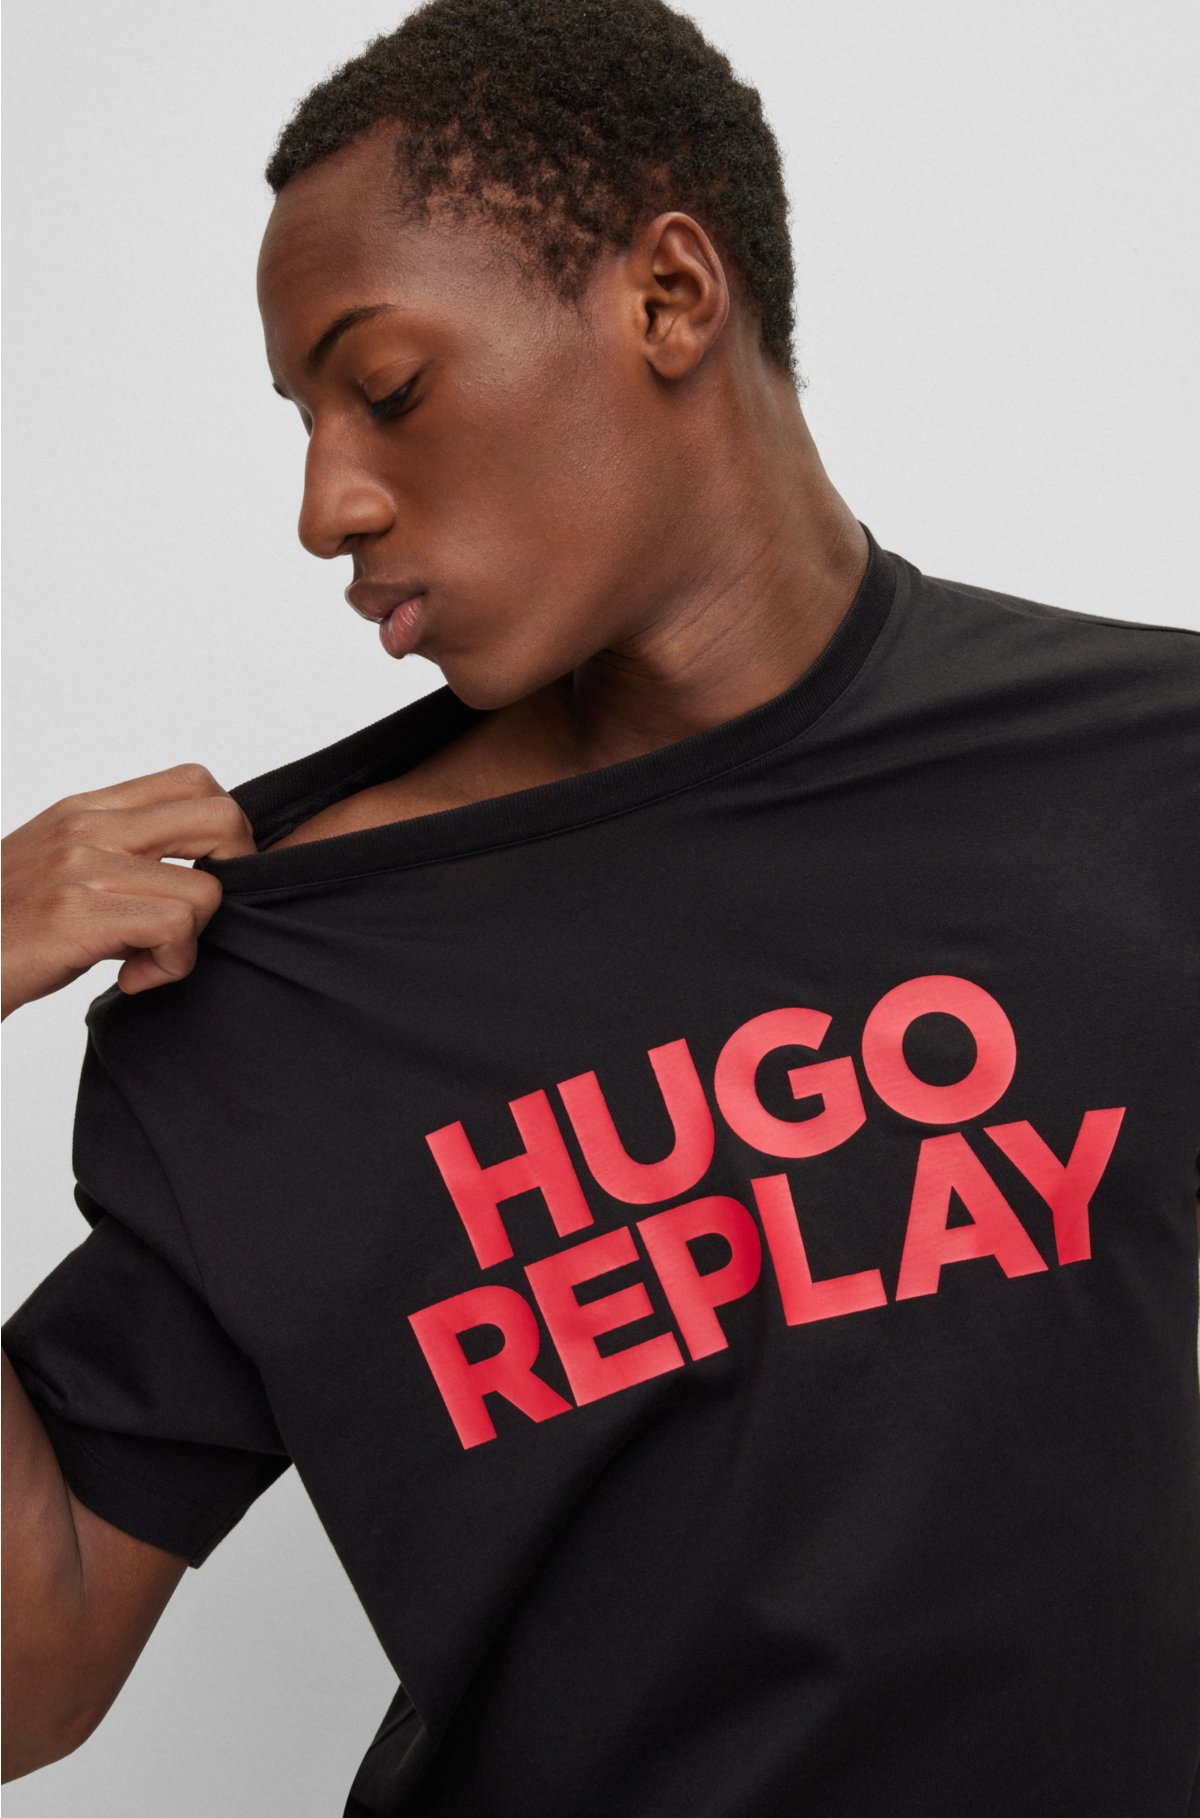 HUGO | REPLAY capsule-logo-print T-shirt in cotton